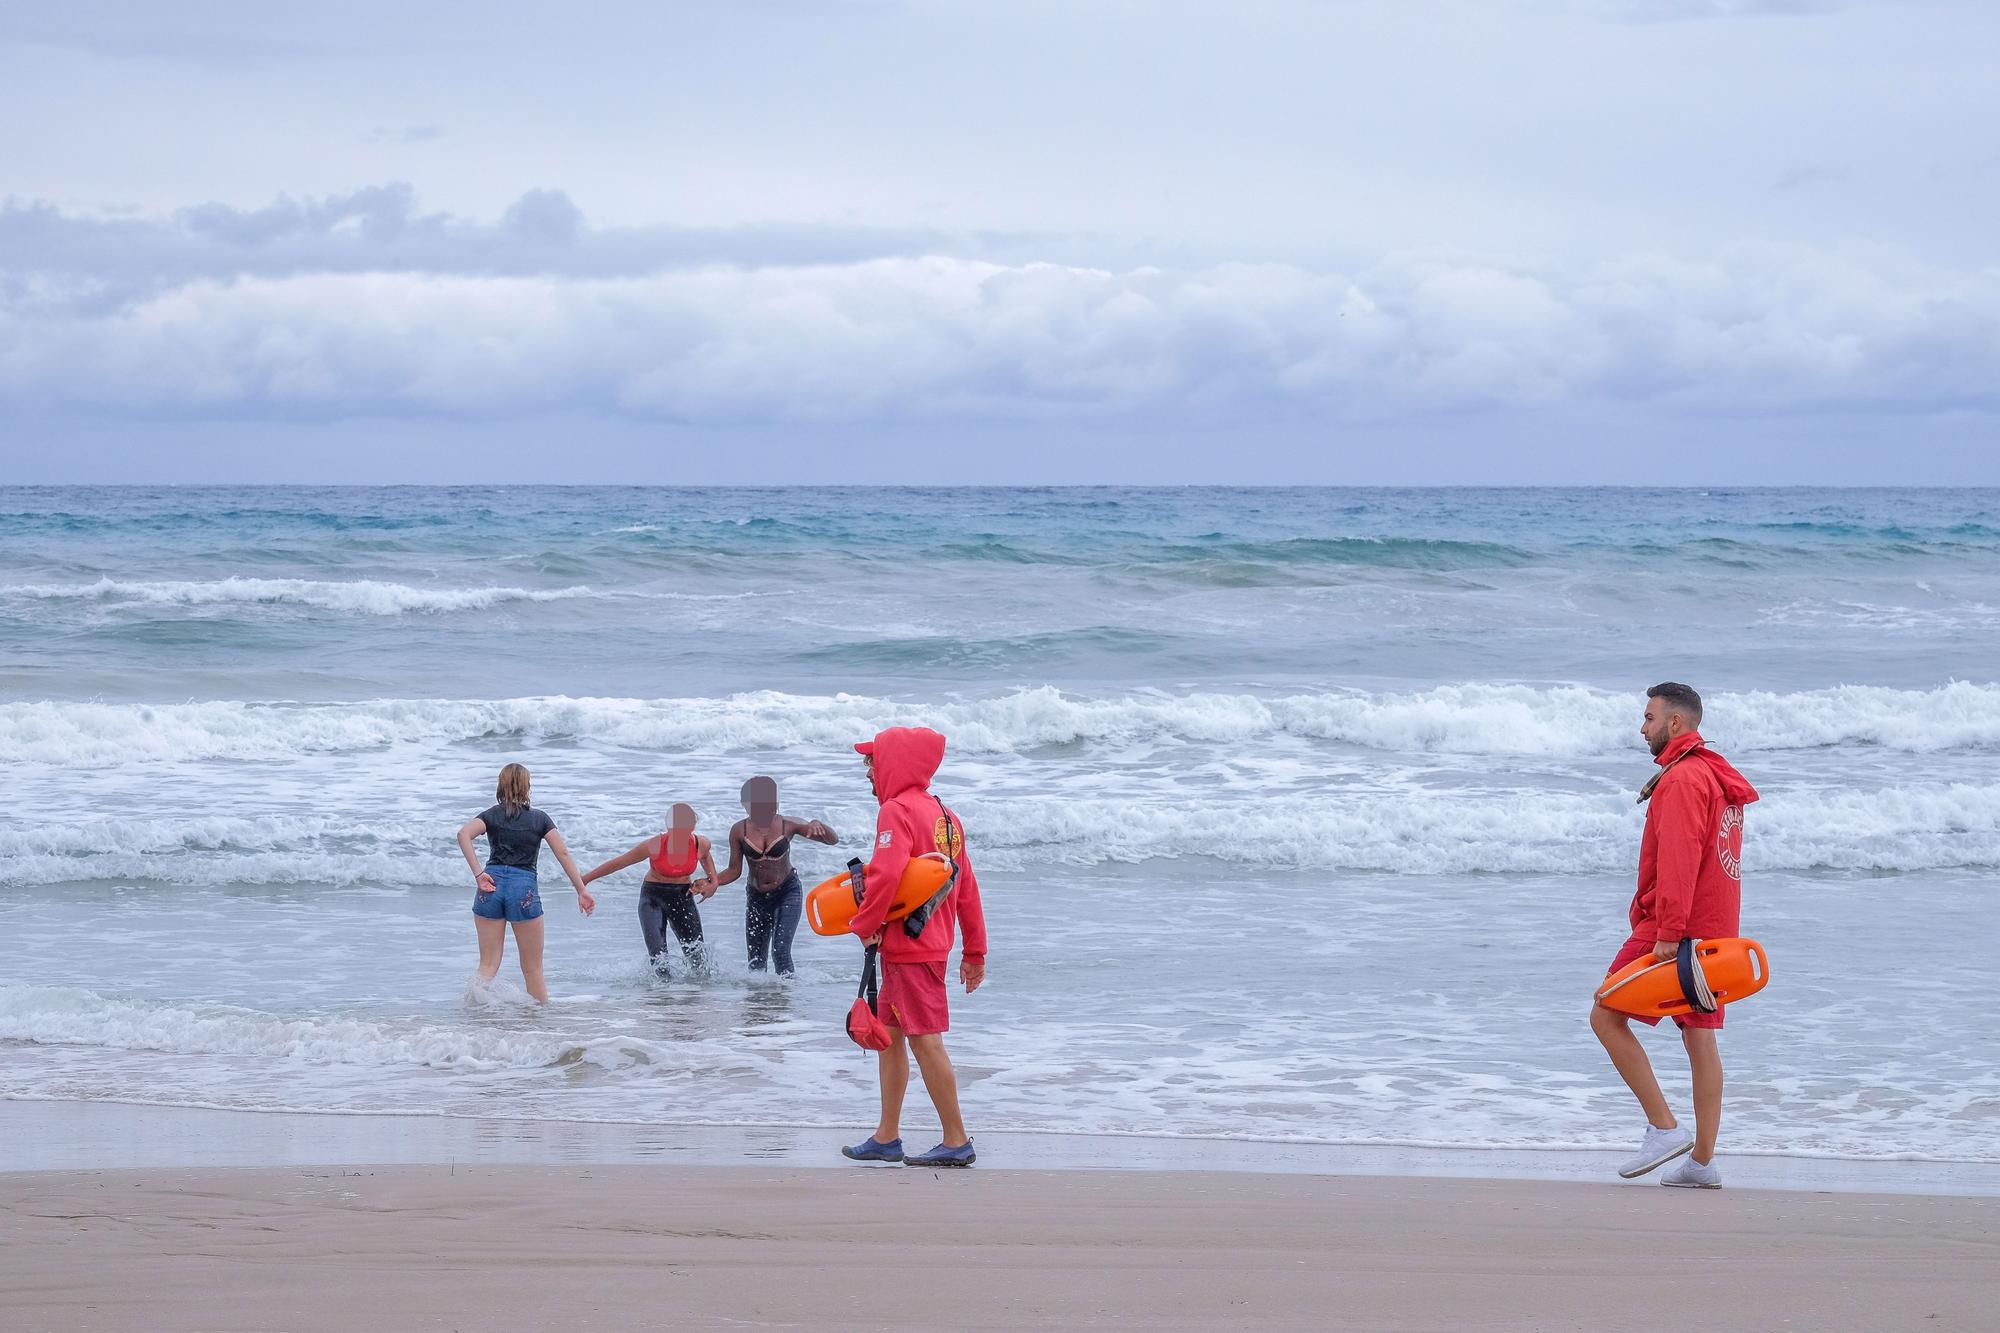 Así eran los Botellones el día de Santa Faz en la Playa de San Juan antes de las restricciones de seguridad